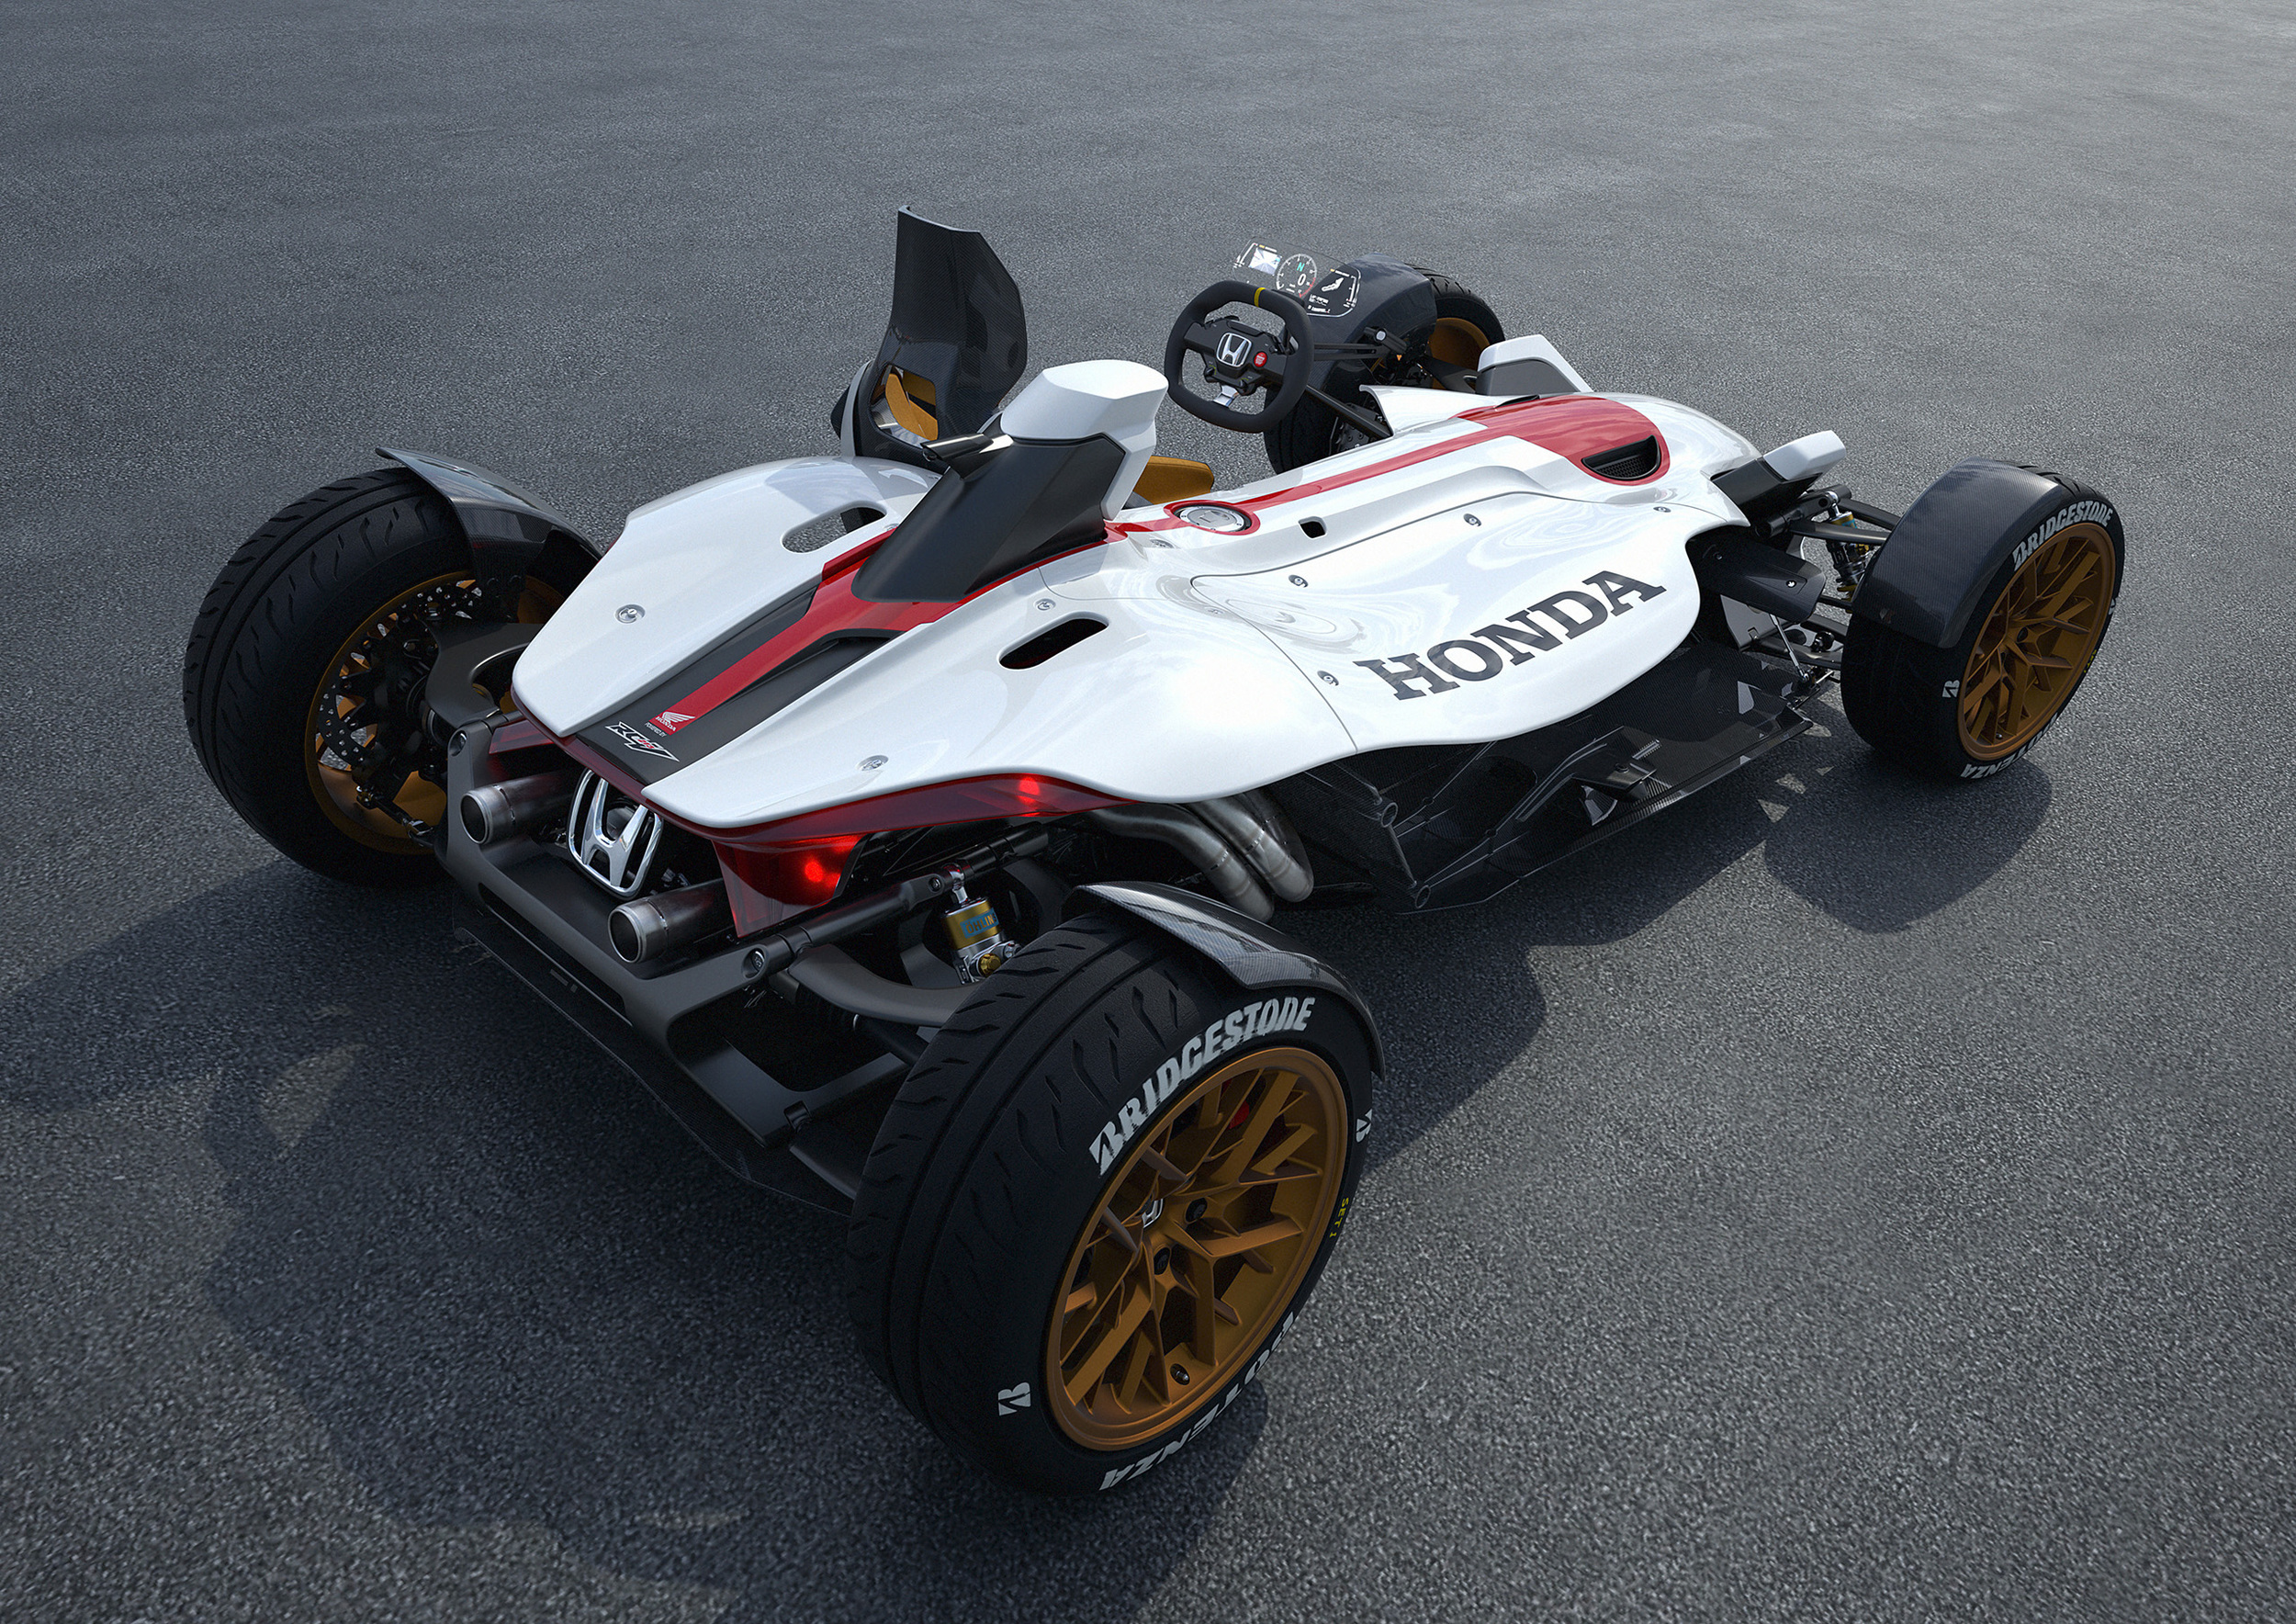 Honda unveils Project 2&4 concept